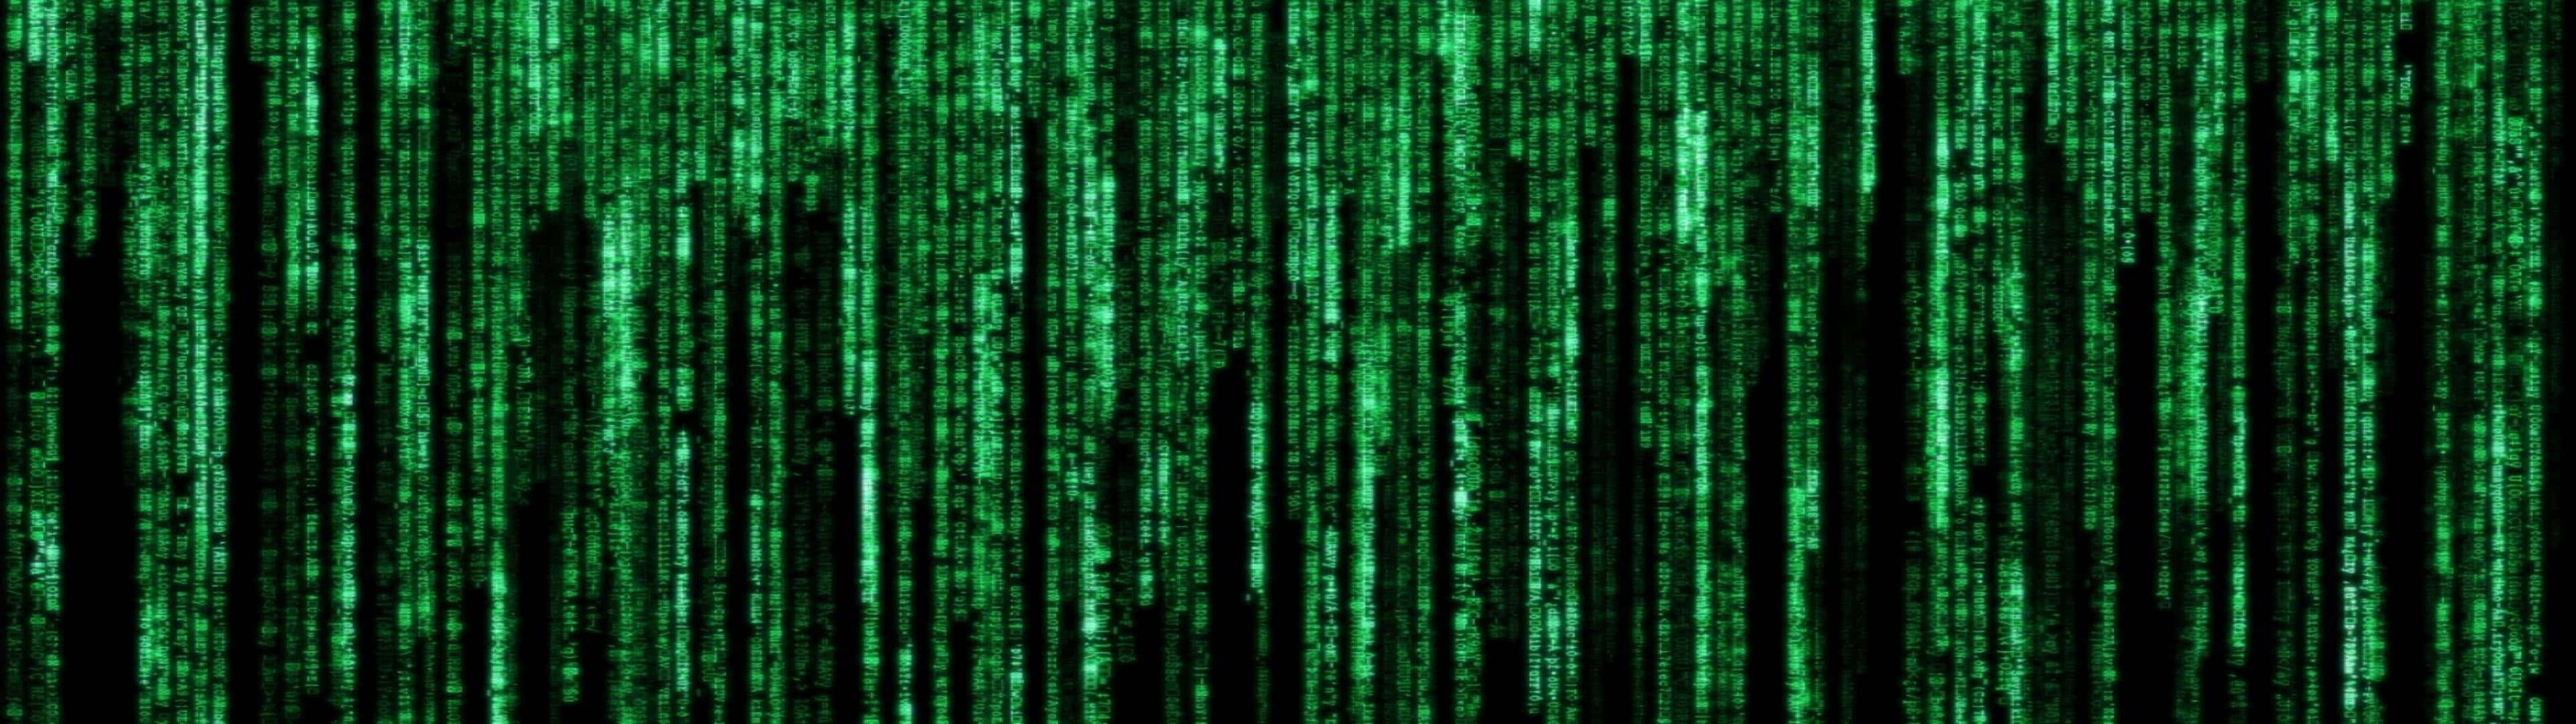 The Matrix Wallpaper - Green Matrix Wallpaper